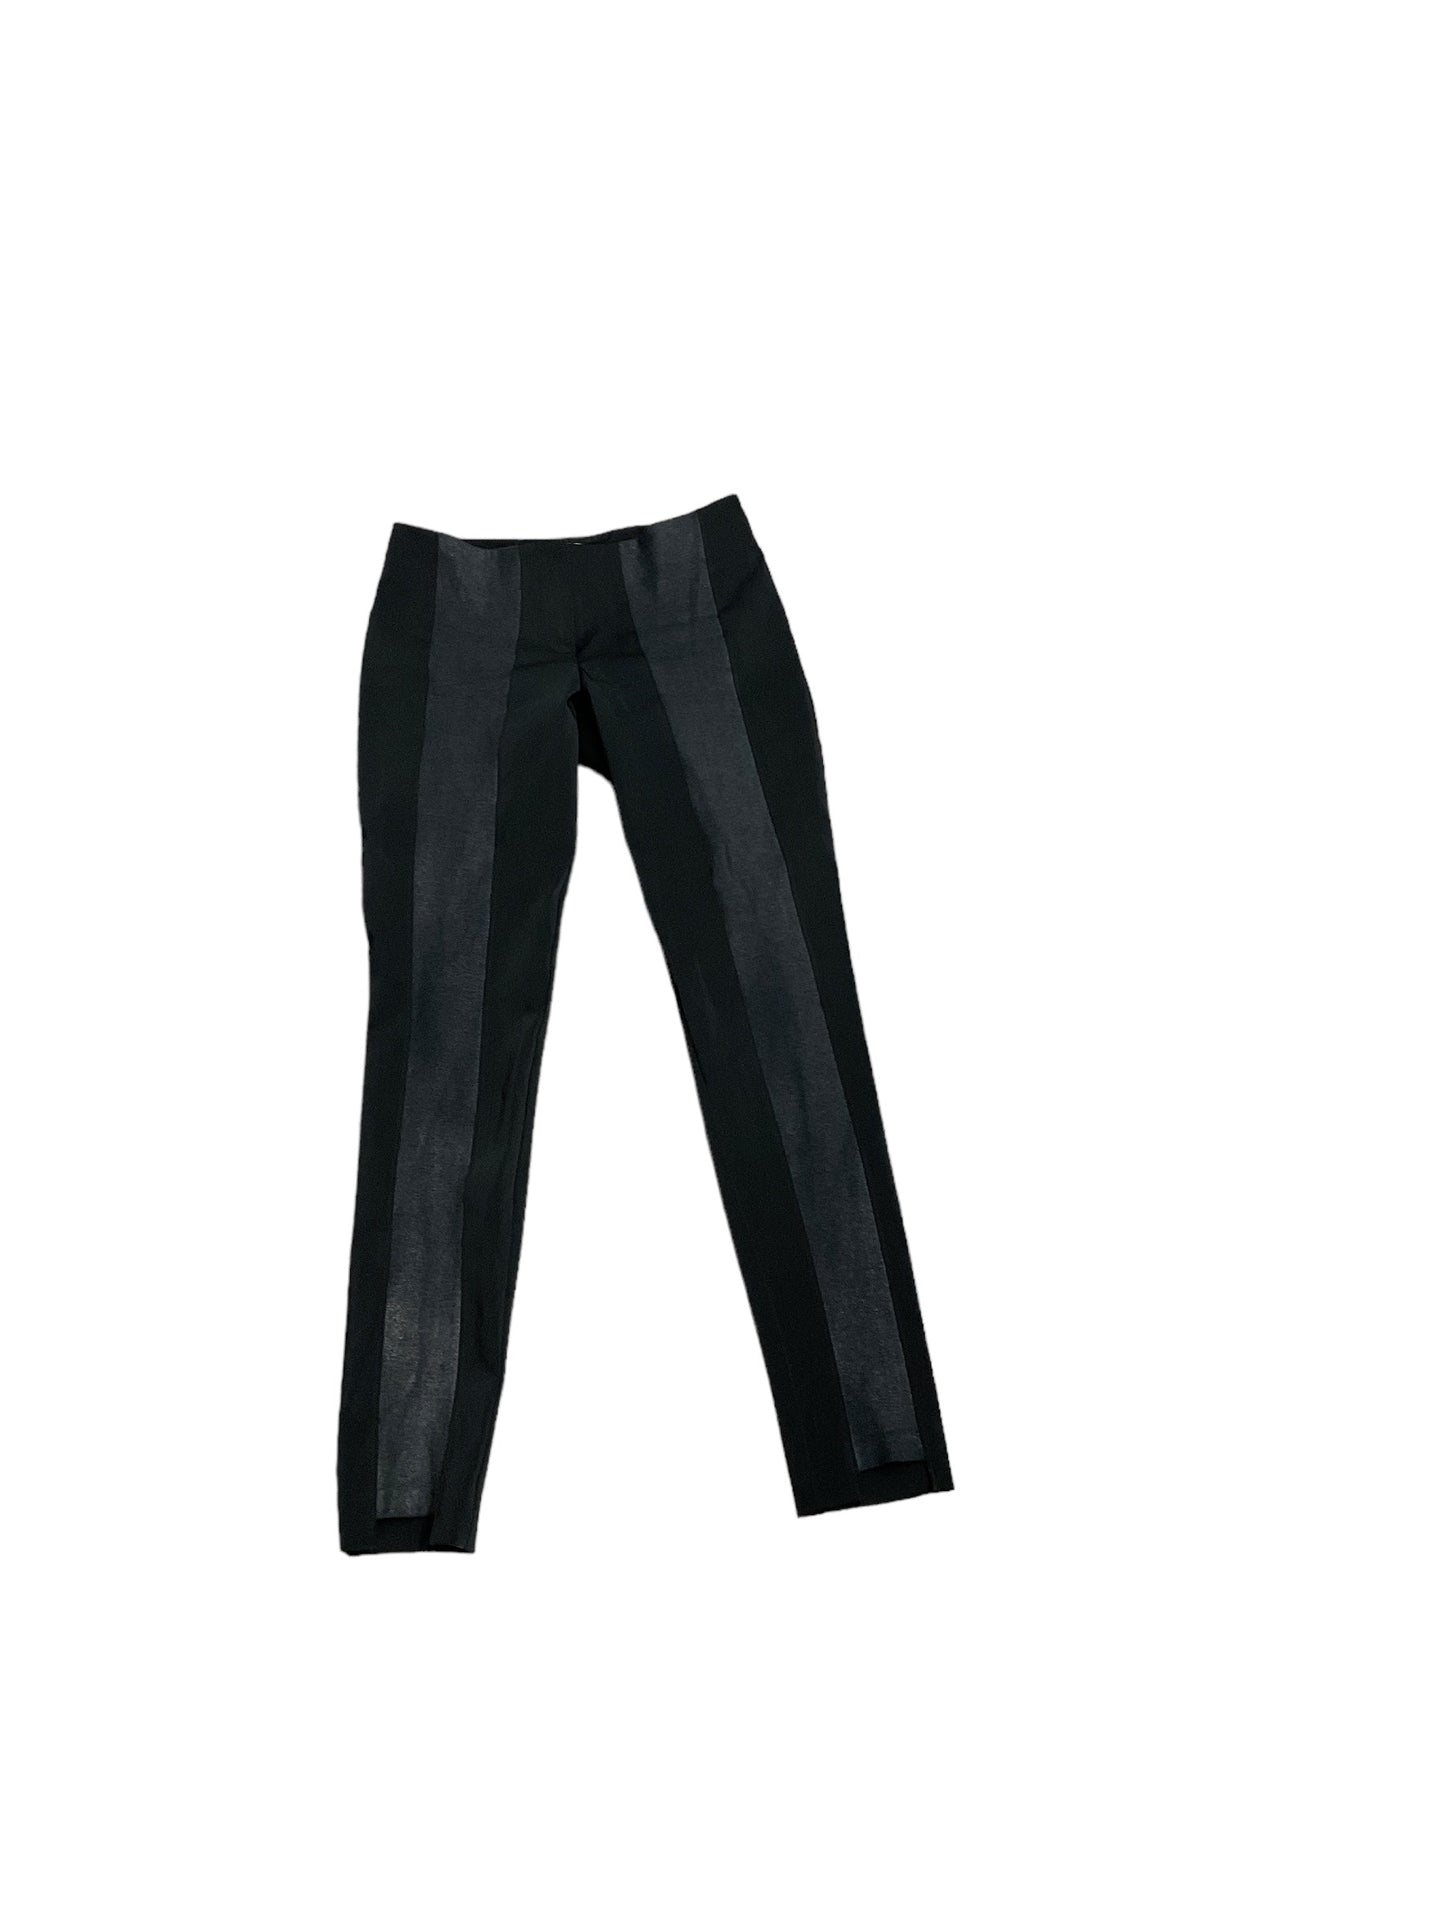 Black Pants Designer Nicole Miller, Size 4